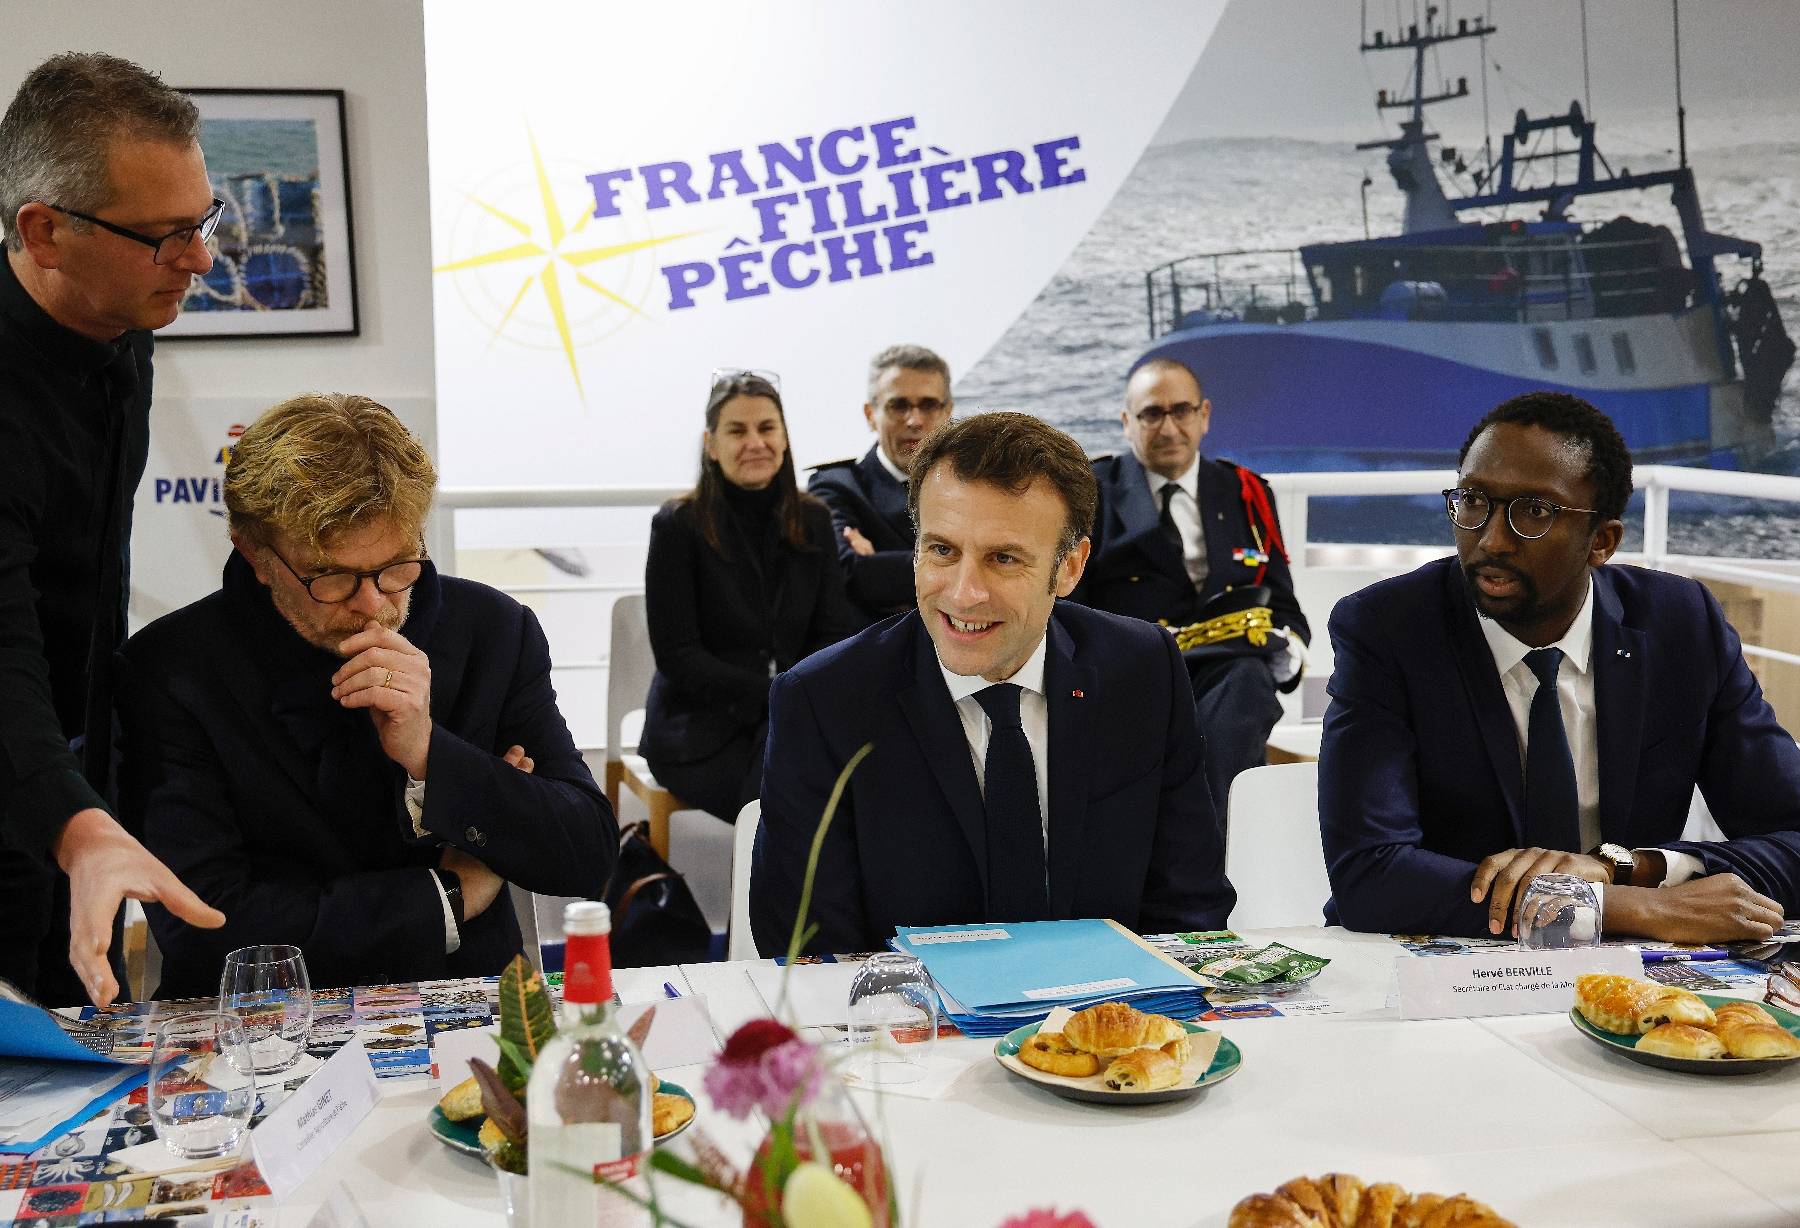 Au salon de l'agriculture, Macron annonce un nouveau plan sur les pesticides